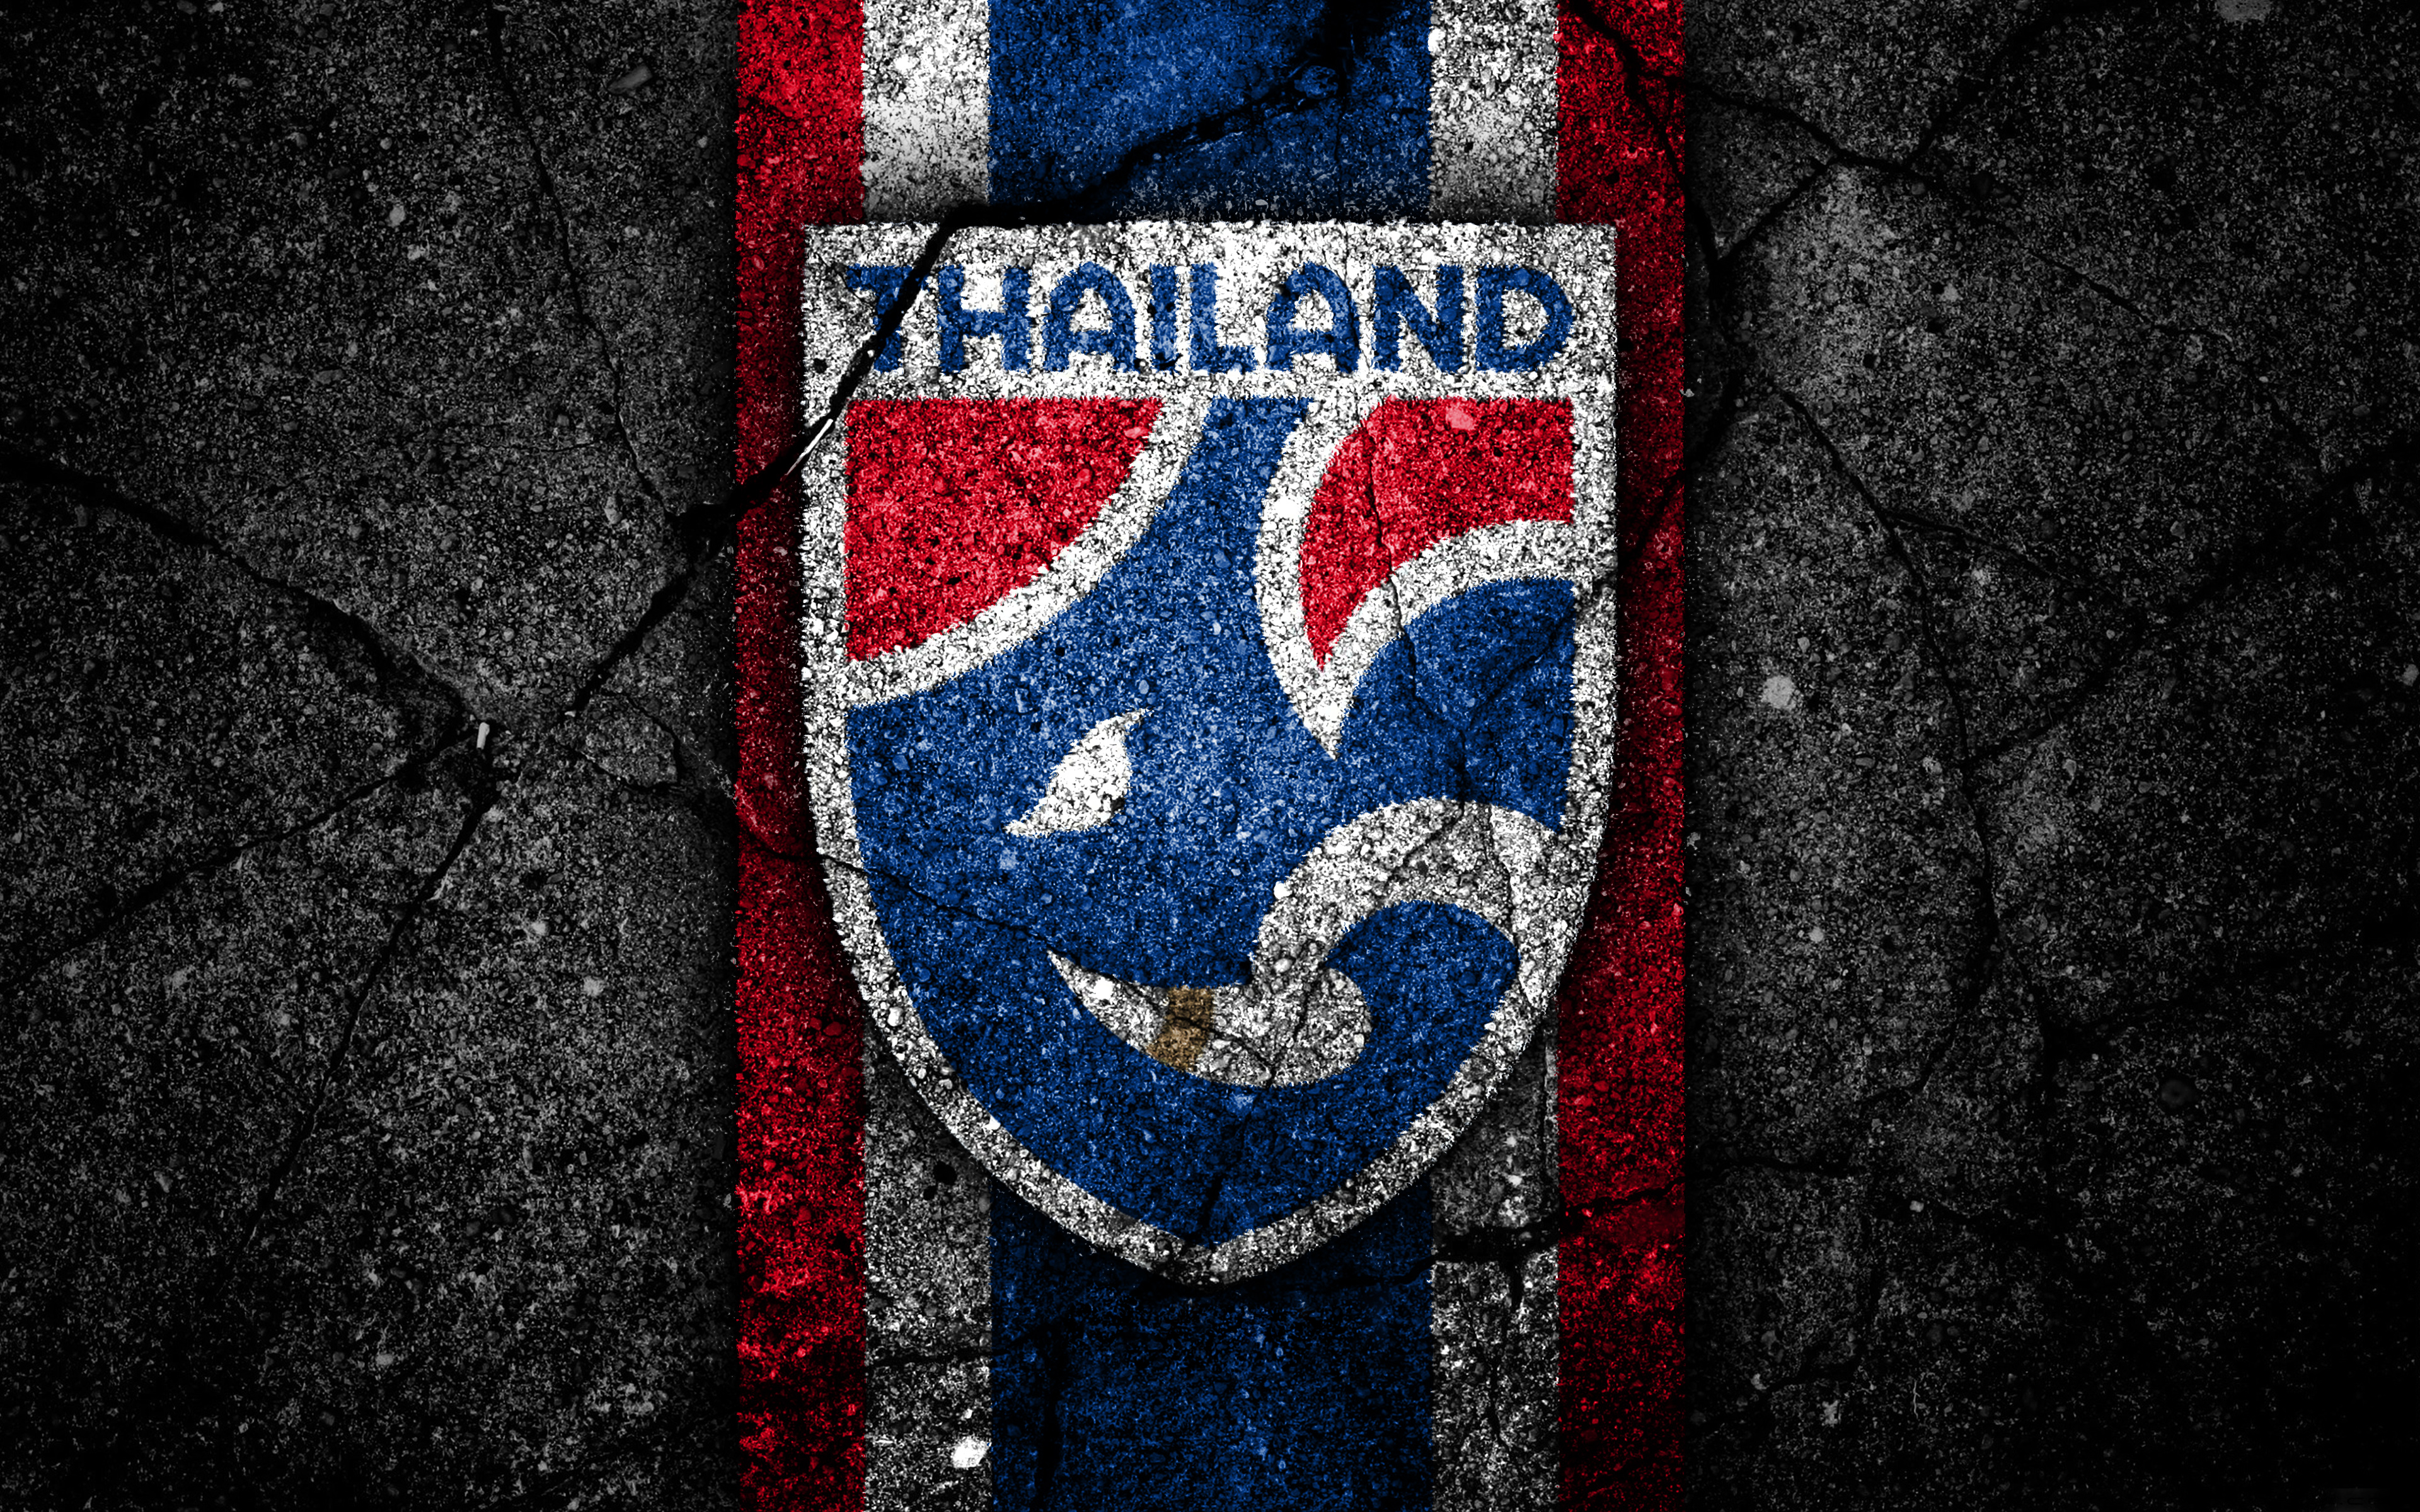 Скачать обои Сборная Таиланда По Футболу на телефон бесплатно